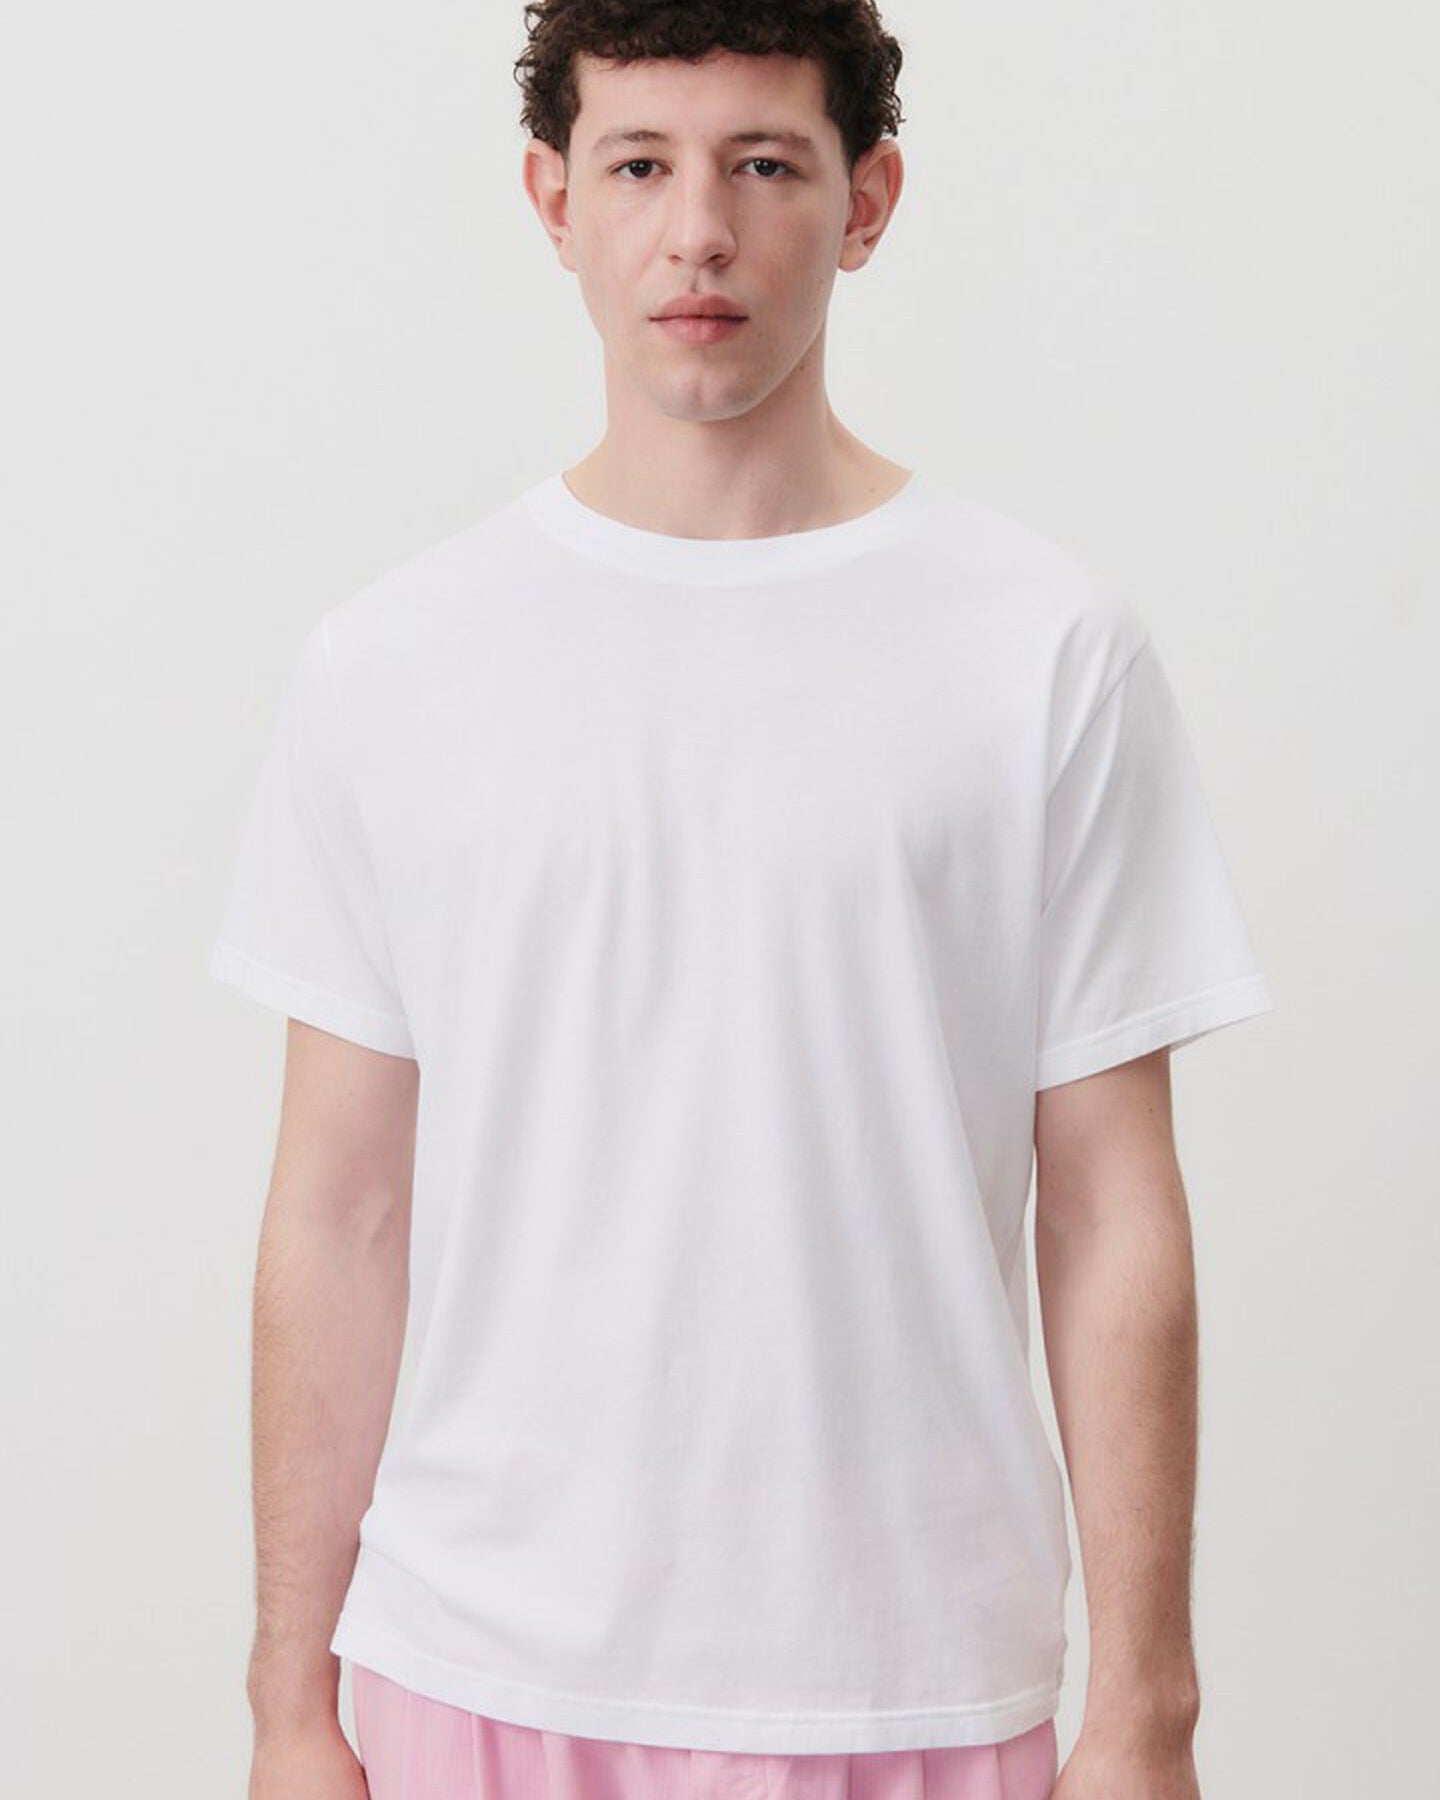 T-shirt Vupaville - Blanc